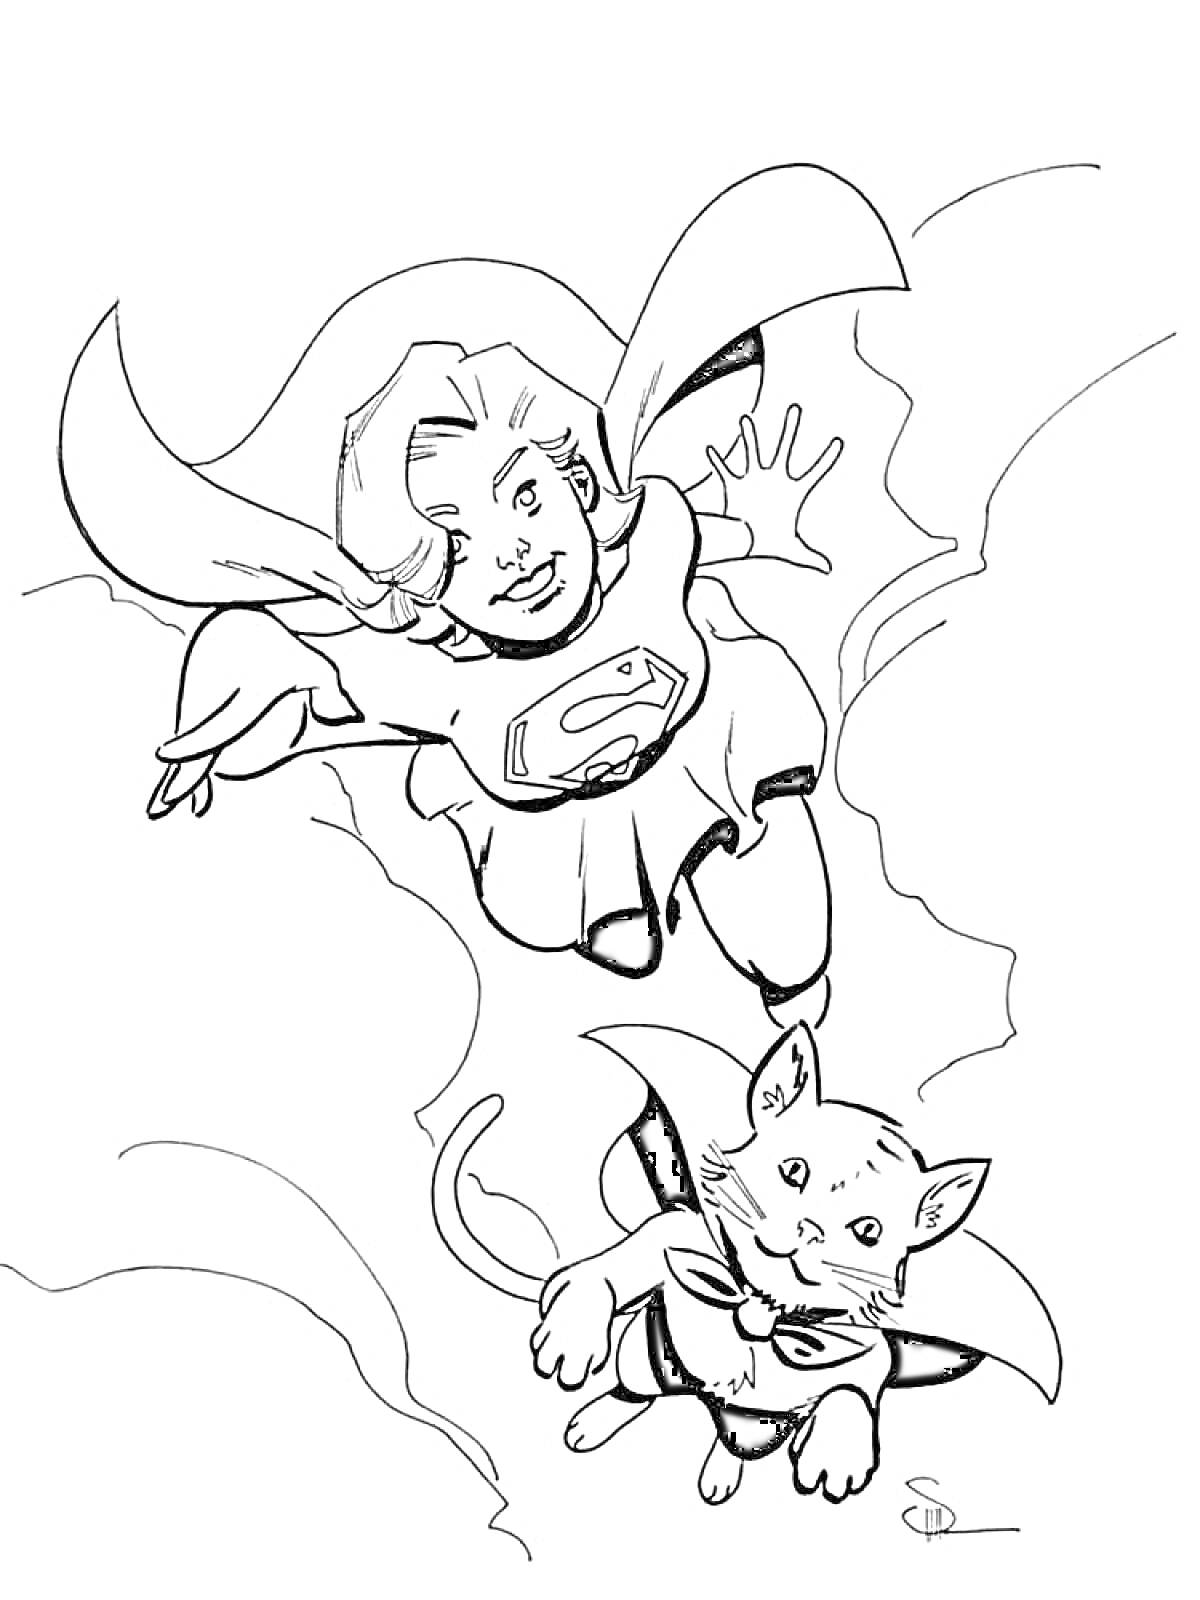 Раскраска Супергерл летит с кошкой в плаще